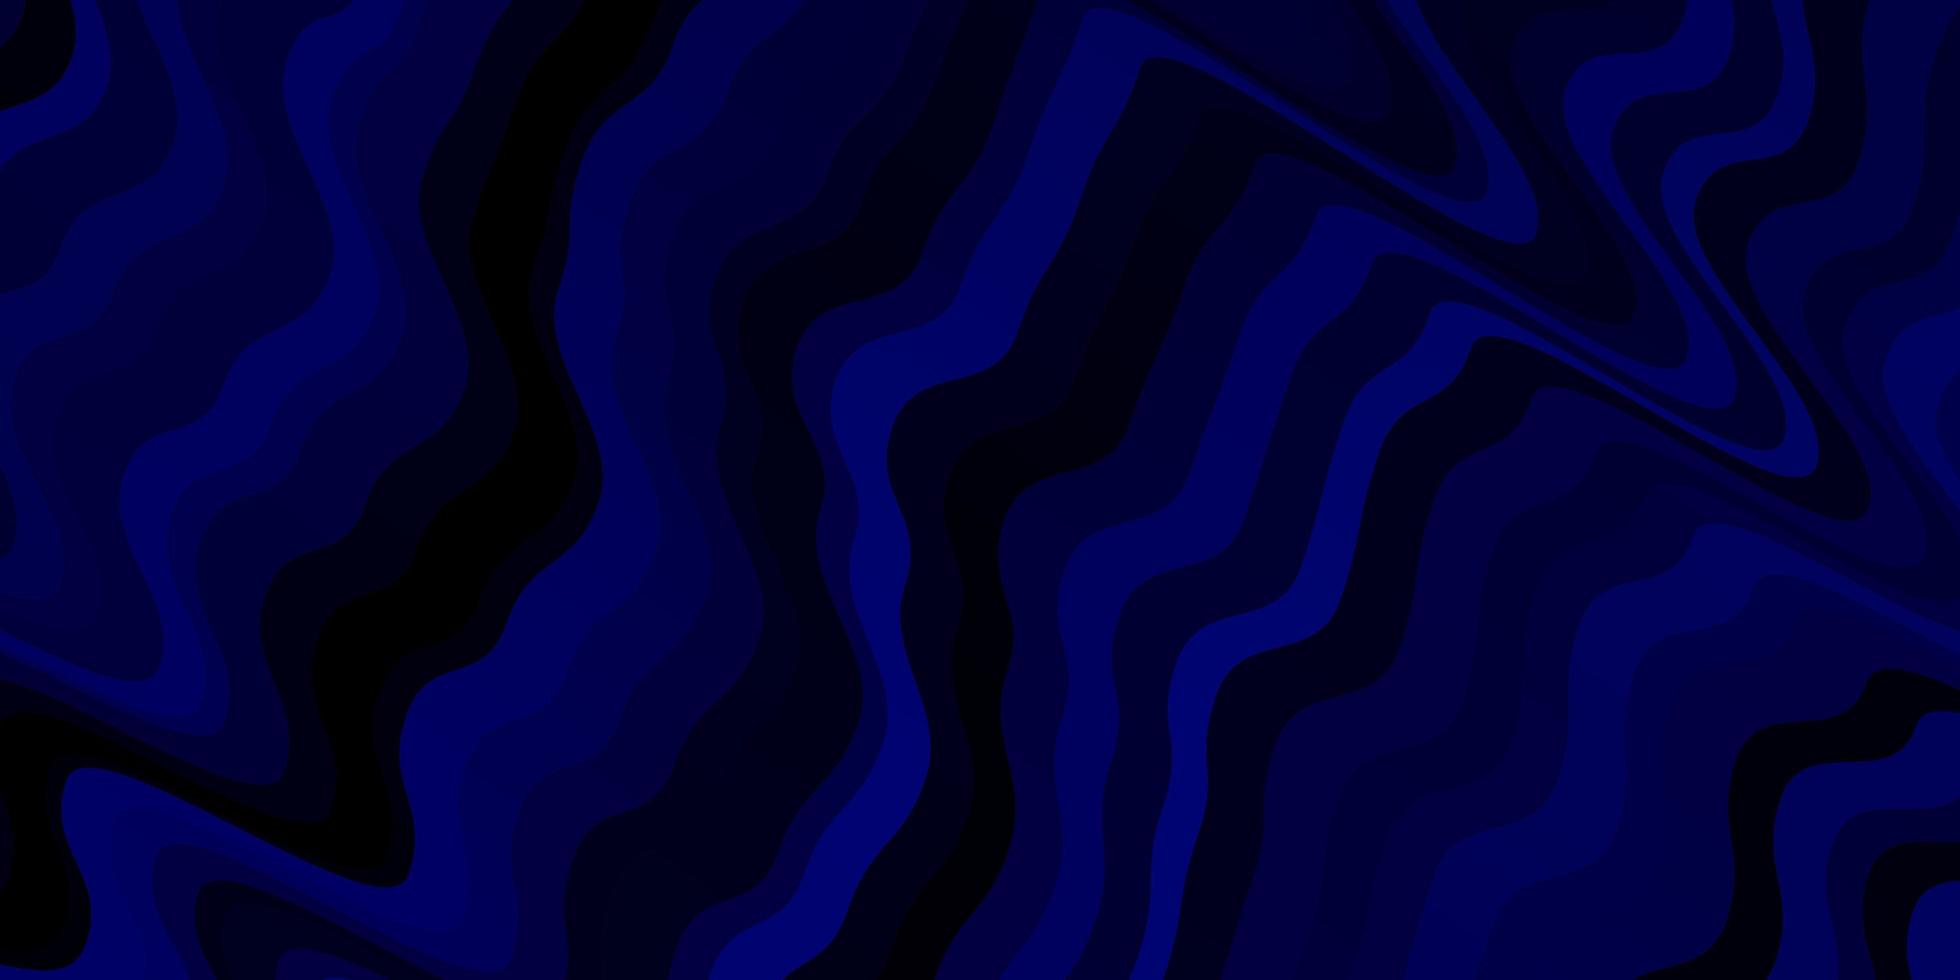 textura de vector azul oscuro con líneas torcidas. Muestra geométrica colorida con curvas de degradado. mejor diseño para su anuncio, cartel, banner.